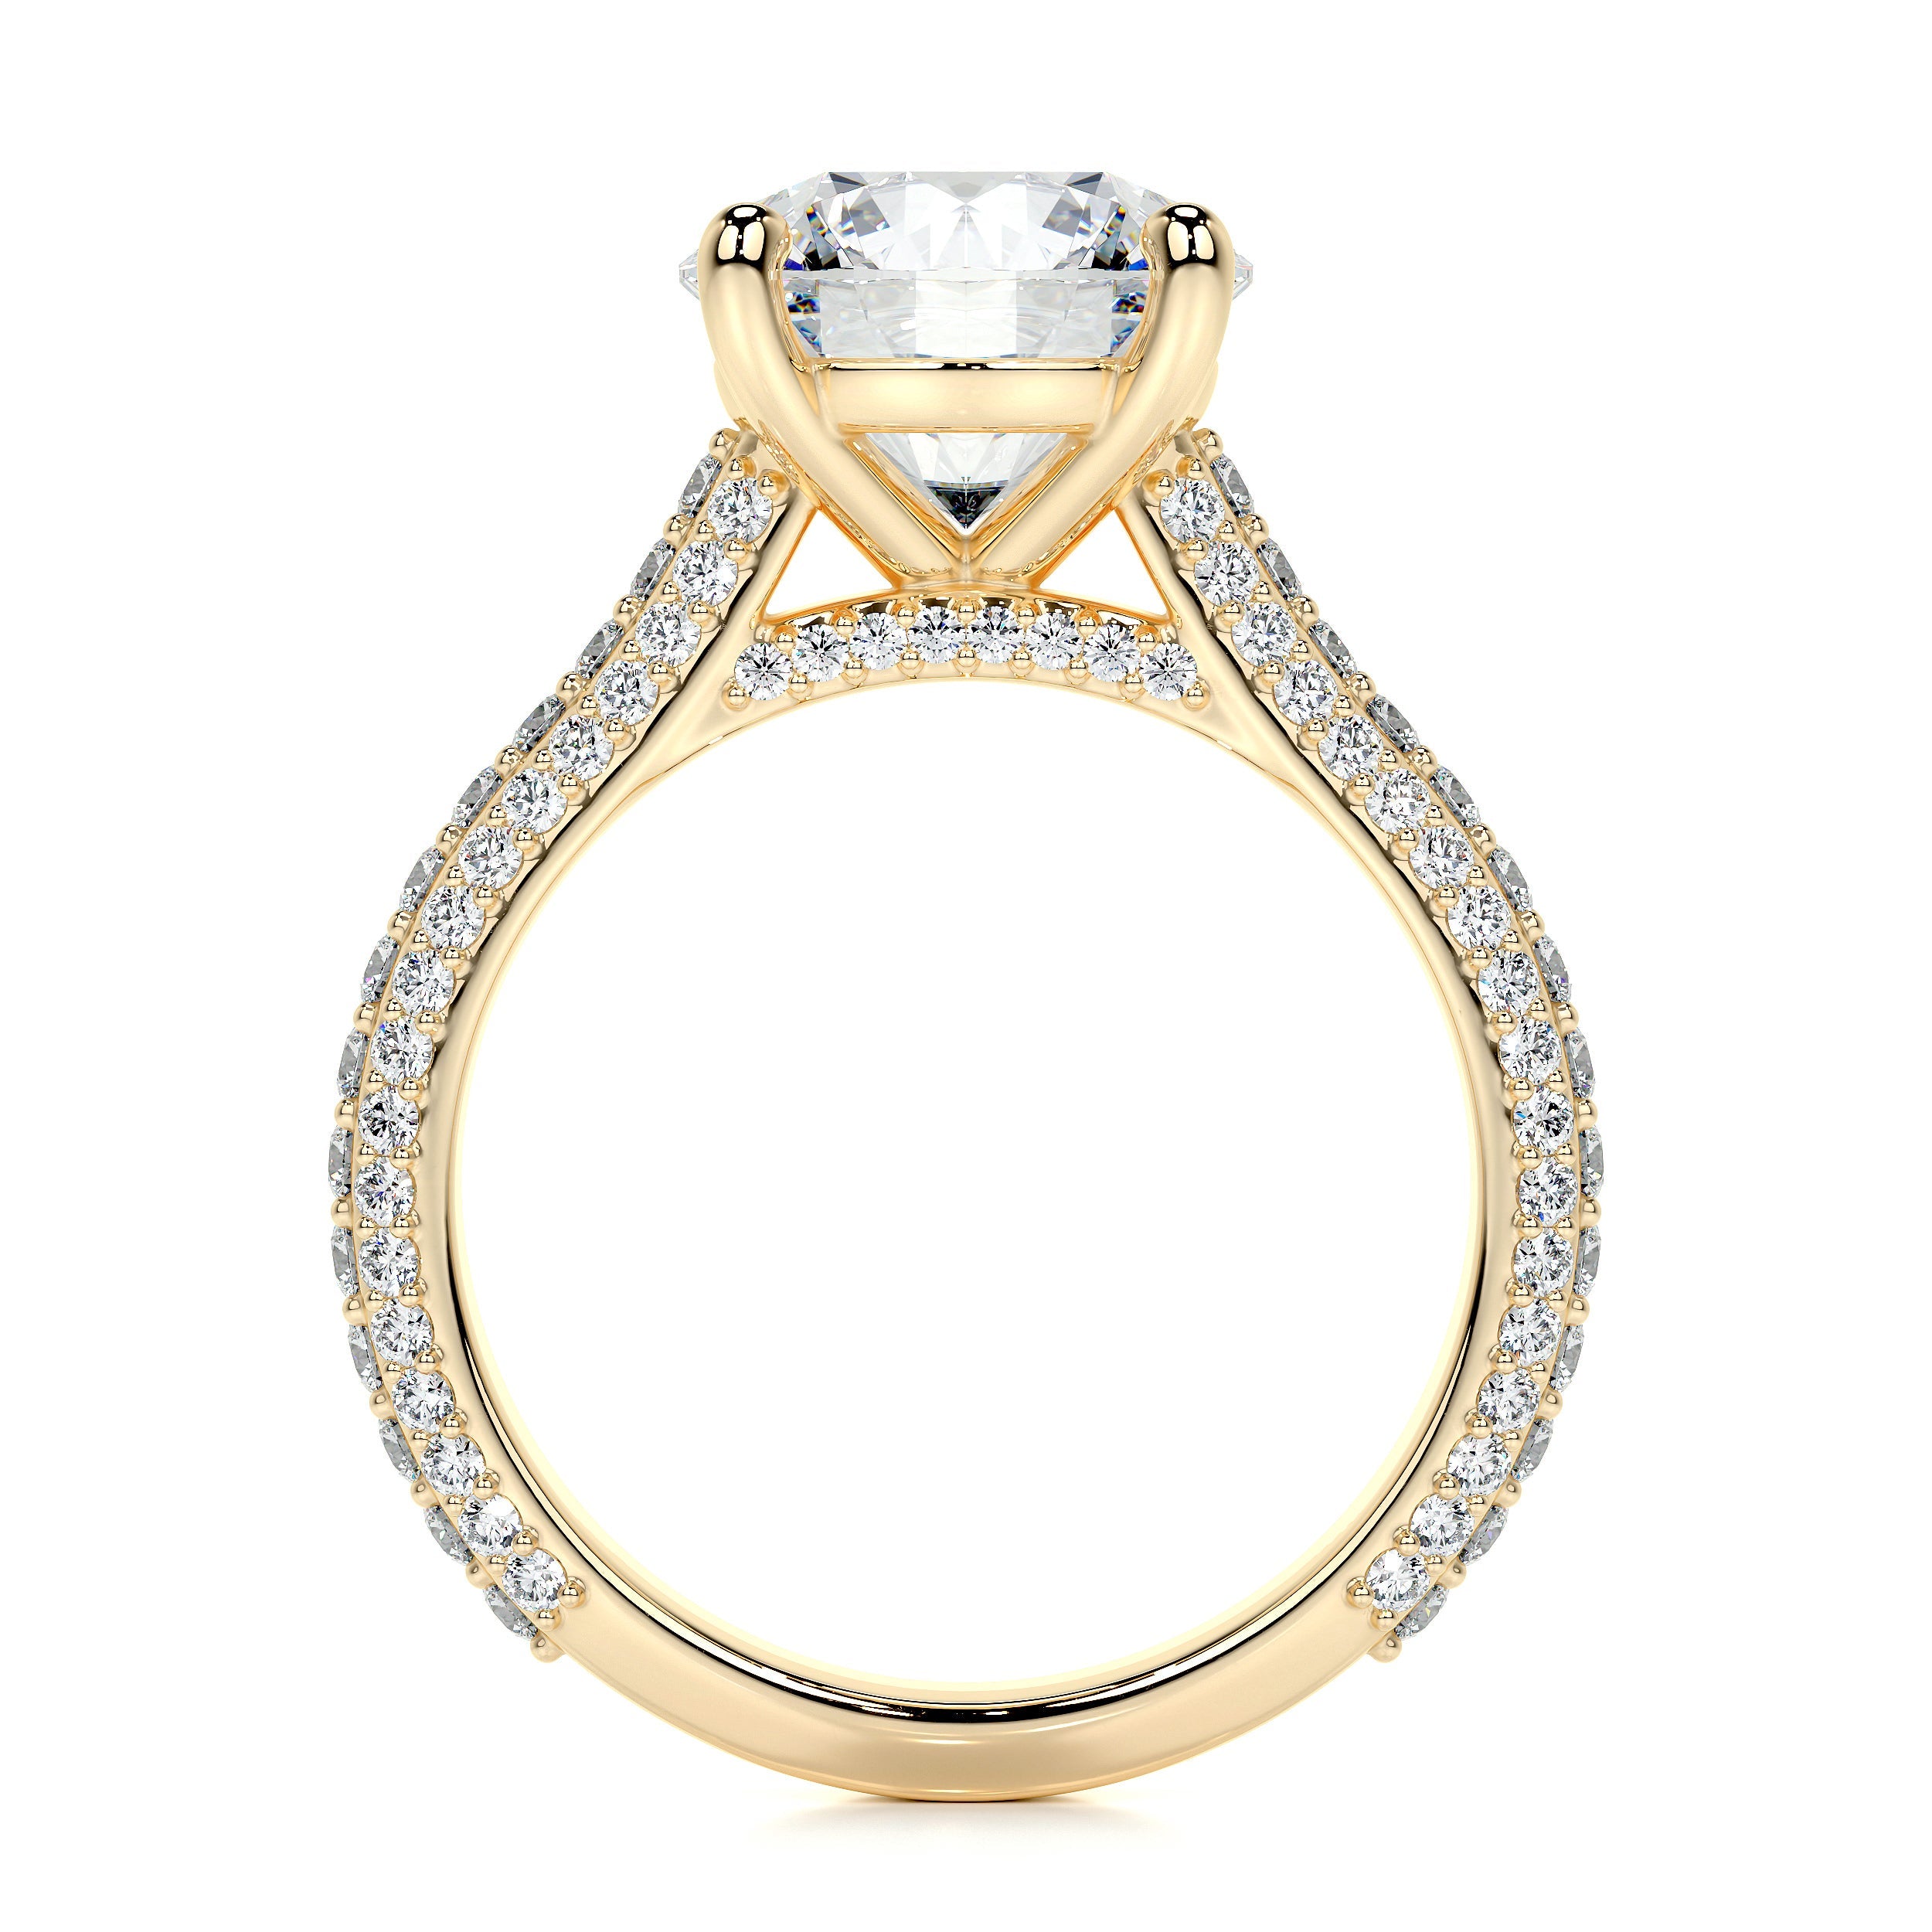 Janet Lab Grown Diamond Ring   (3.5 Carat) -18K Yellow Gold